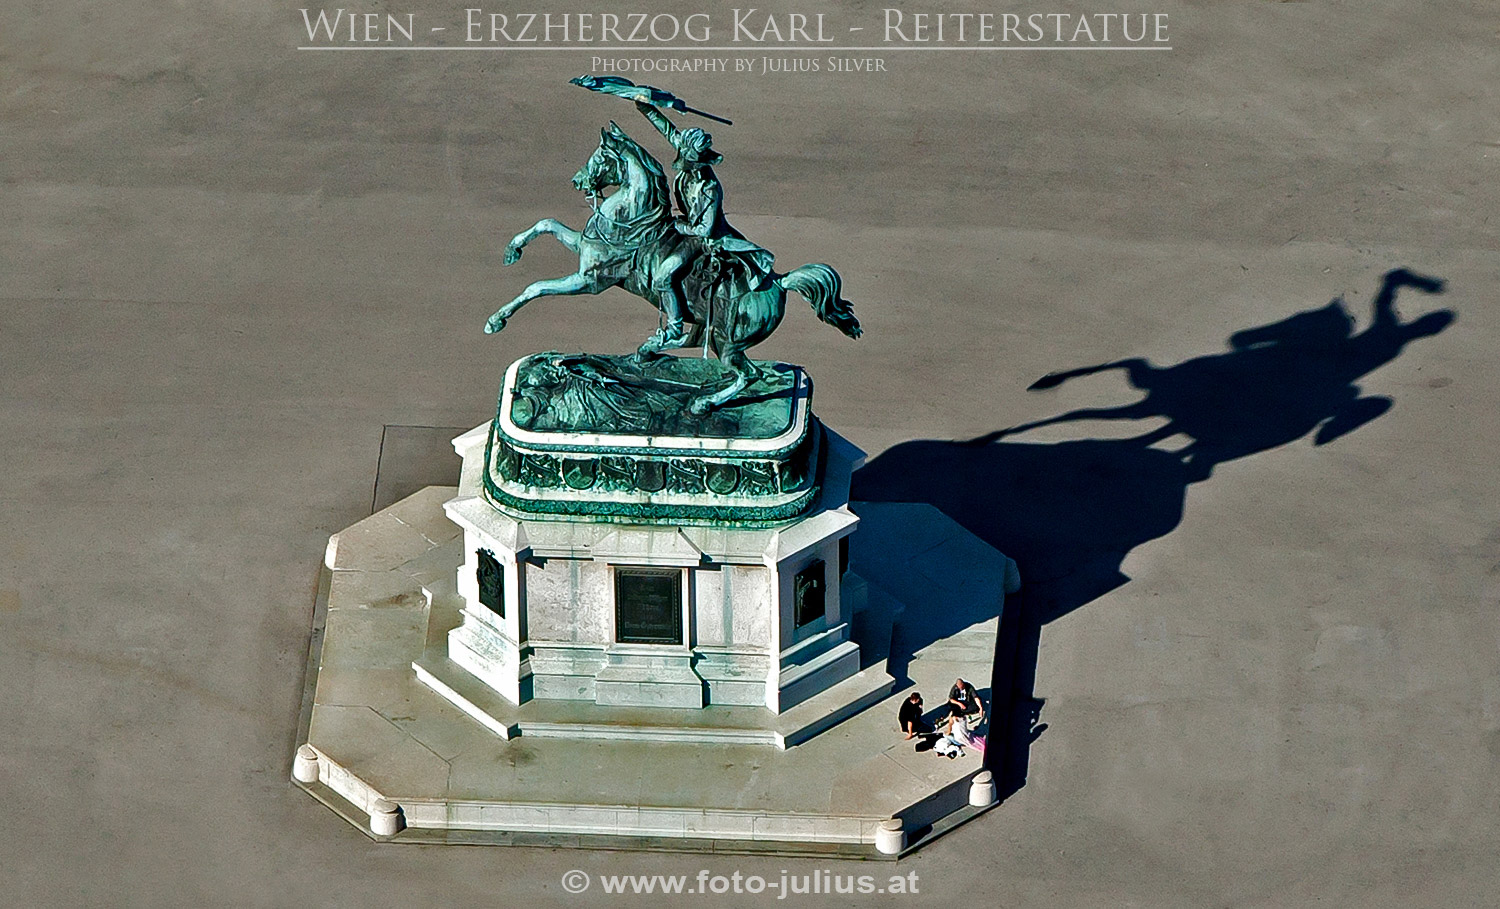 W6020a_Erzherzog_Karl_Reiterstatue_Wien.jpg, 409kB